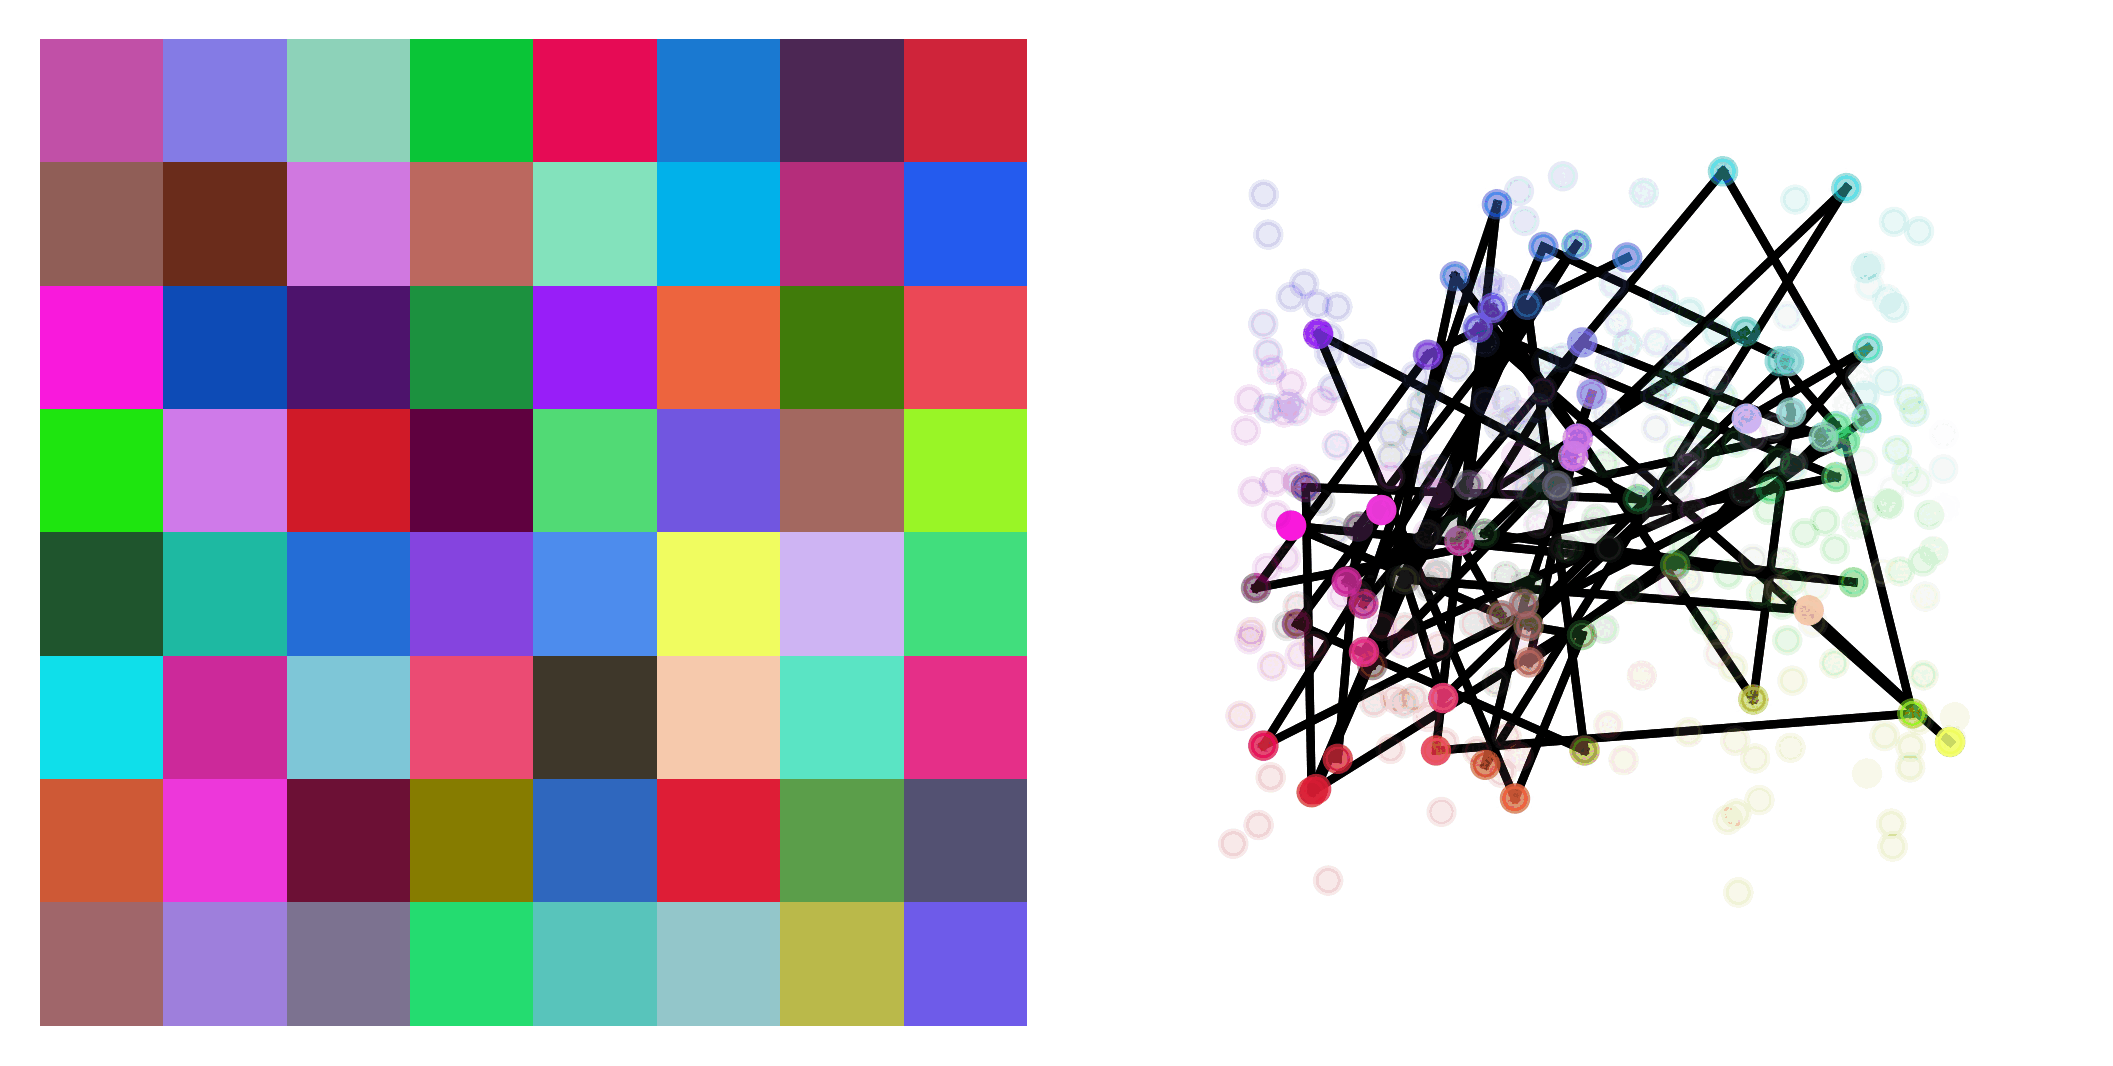 uniform_colors_1d_64_p0_fit_animation.gif